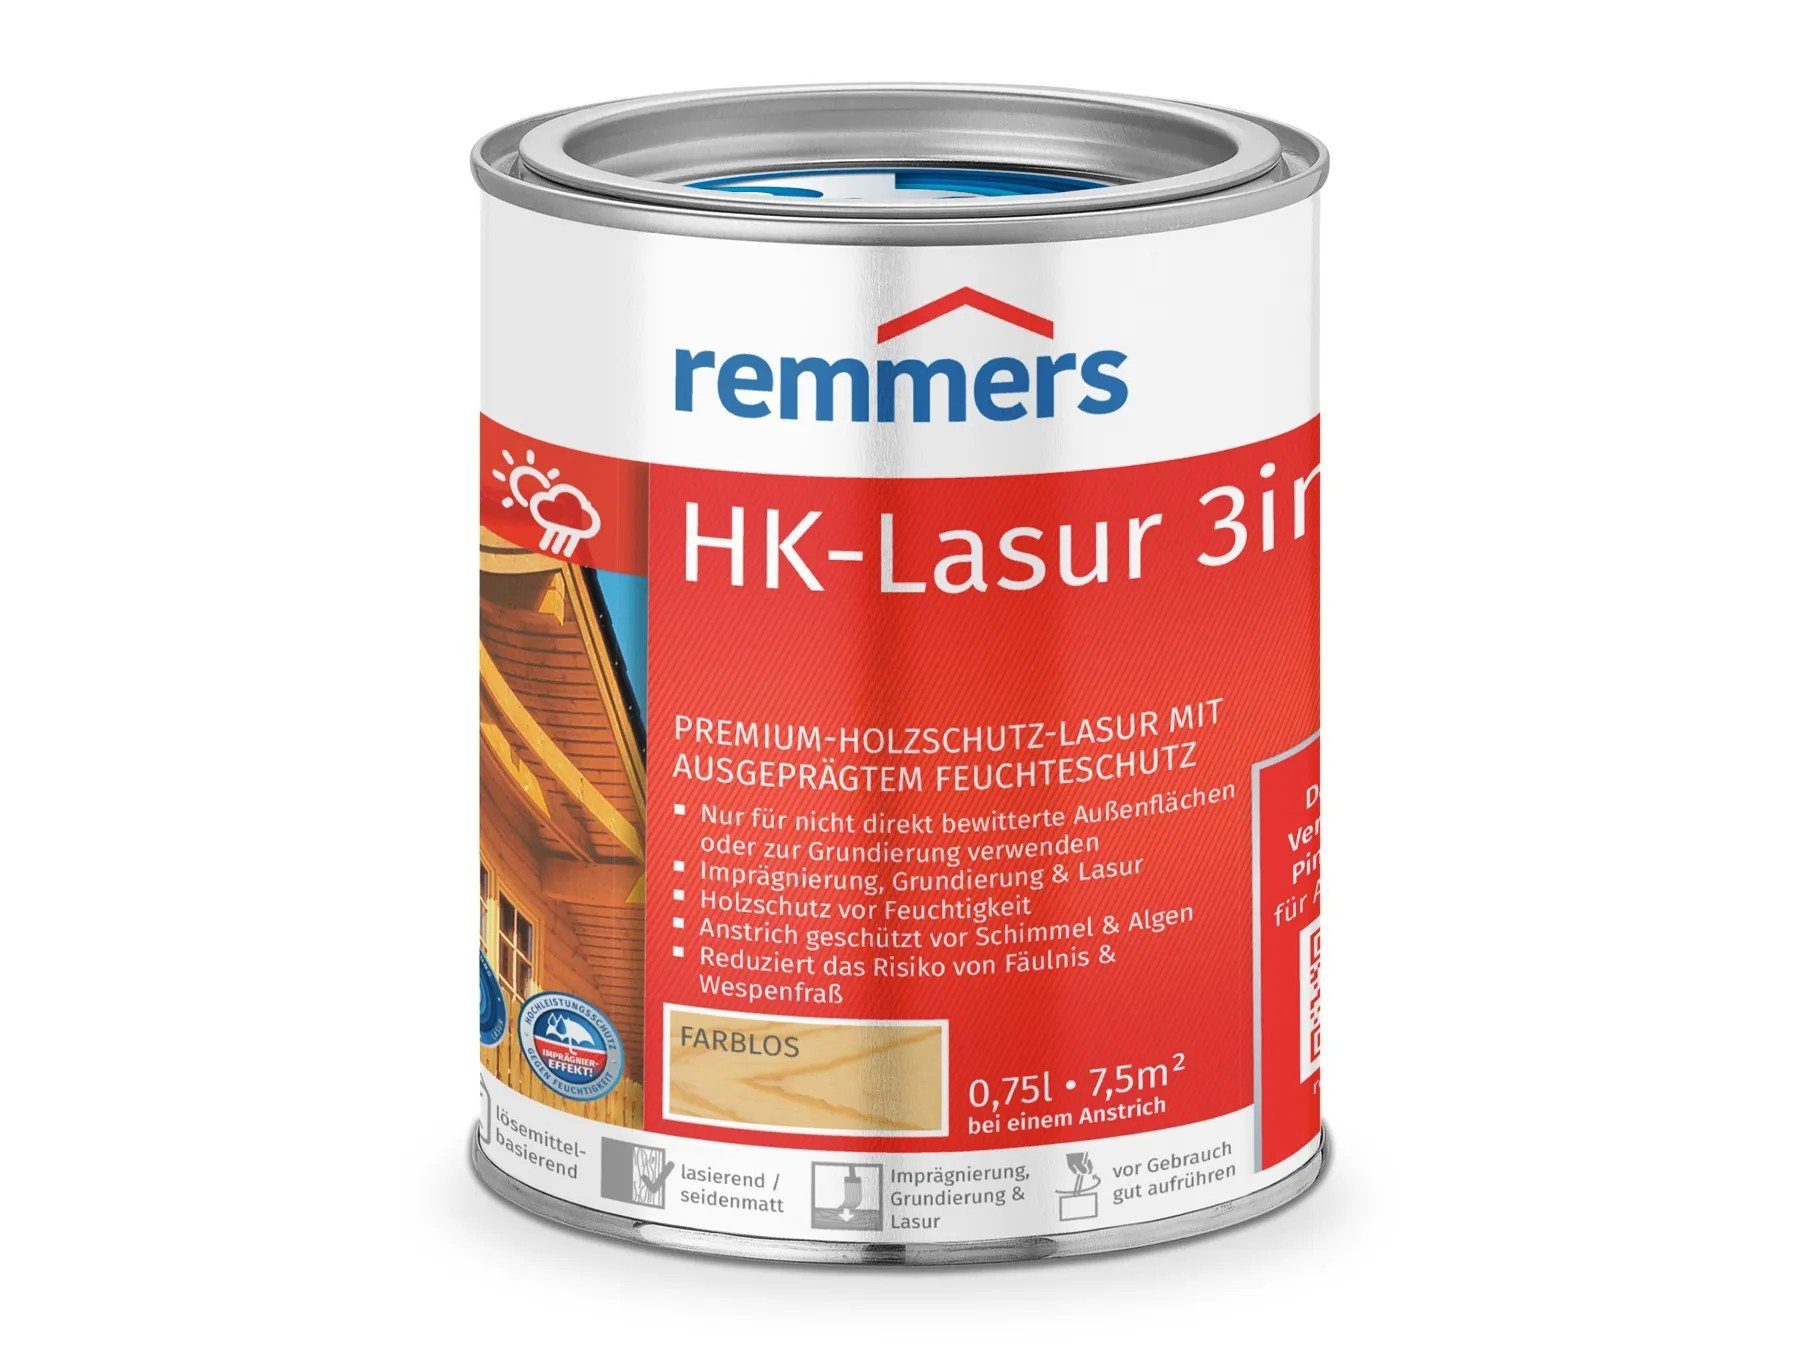 HK-Lasur farblos Remmers Holzschutzlasur 3in1